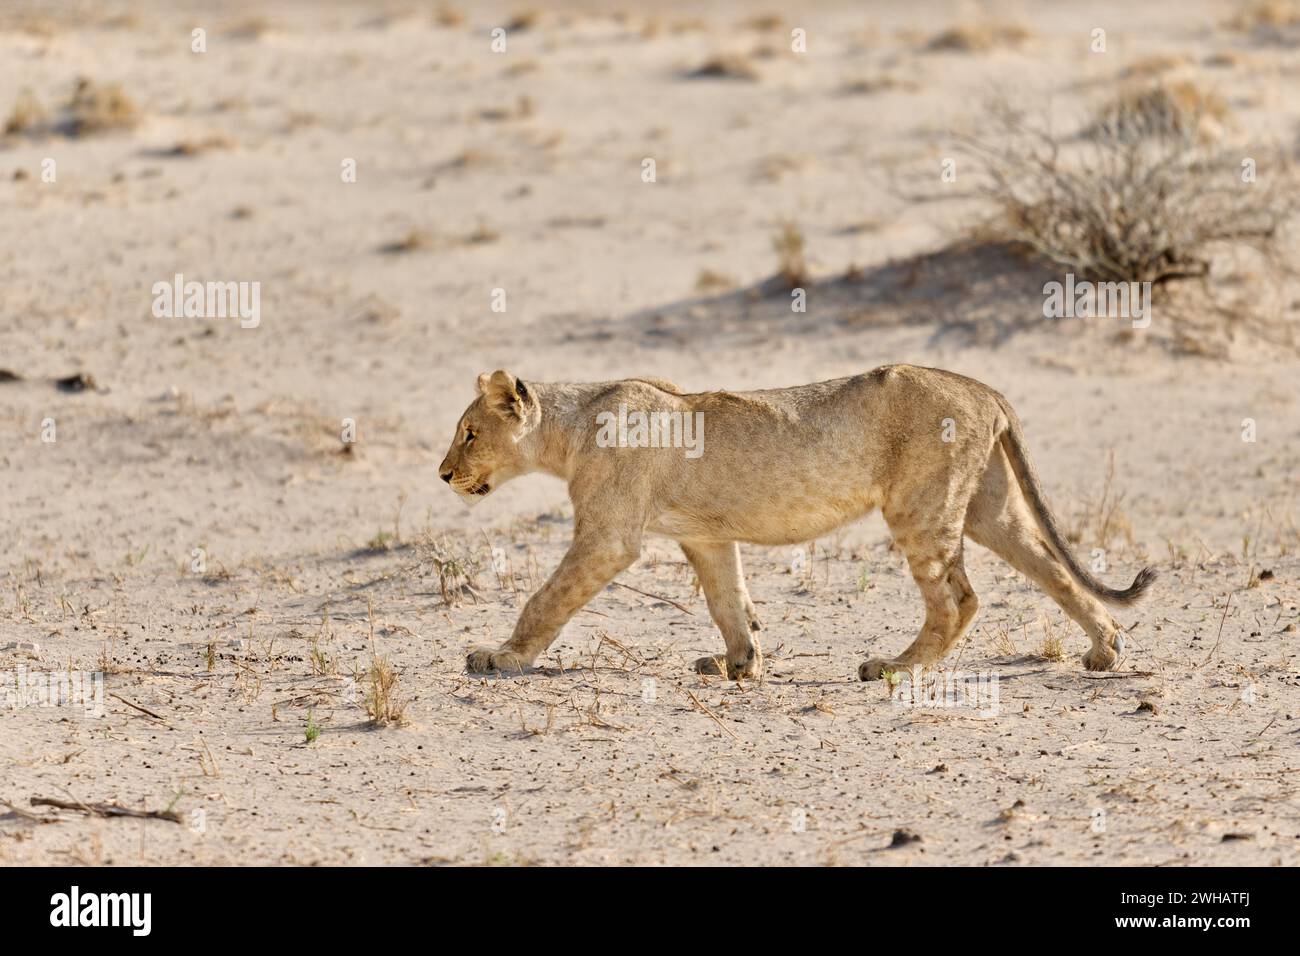 Ourson de lion marchant (Panthera Leo), Parc National d'Etosha, Namibie, Afrique Banque D'Images